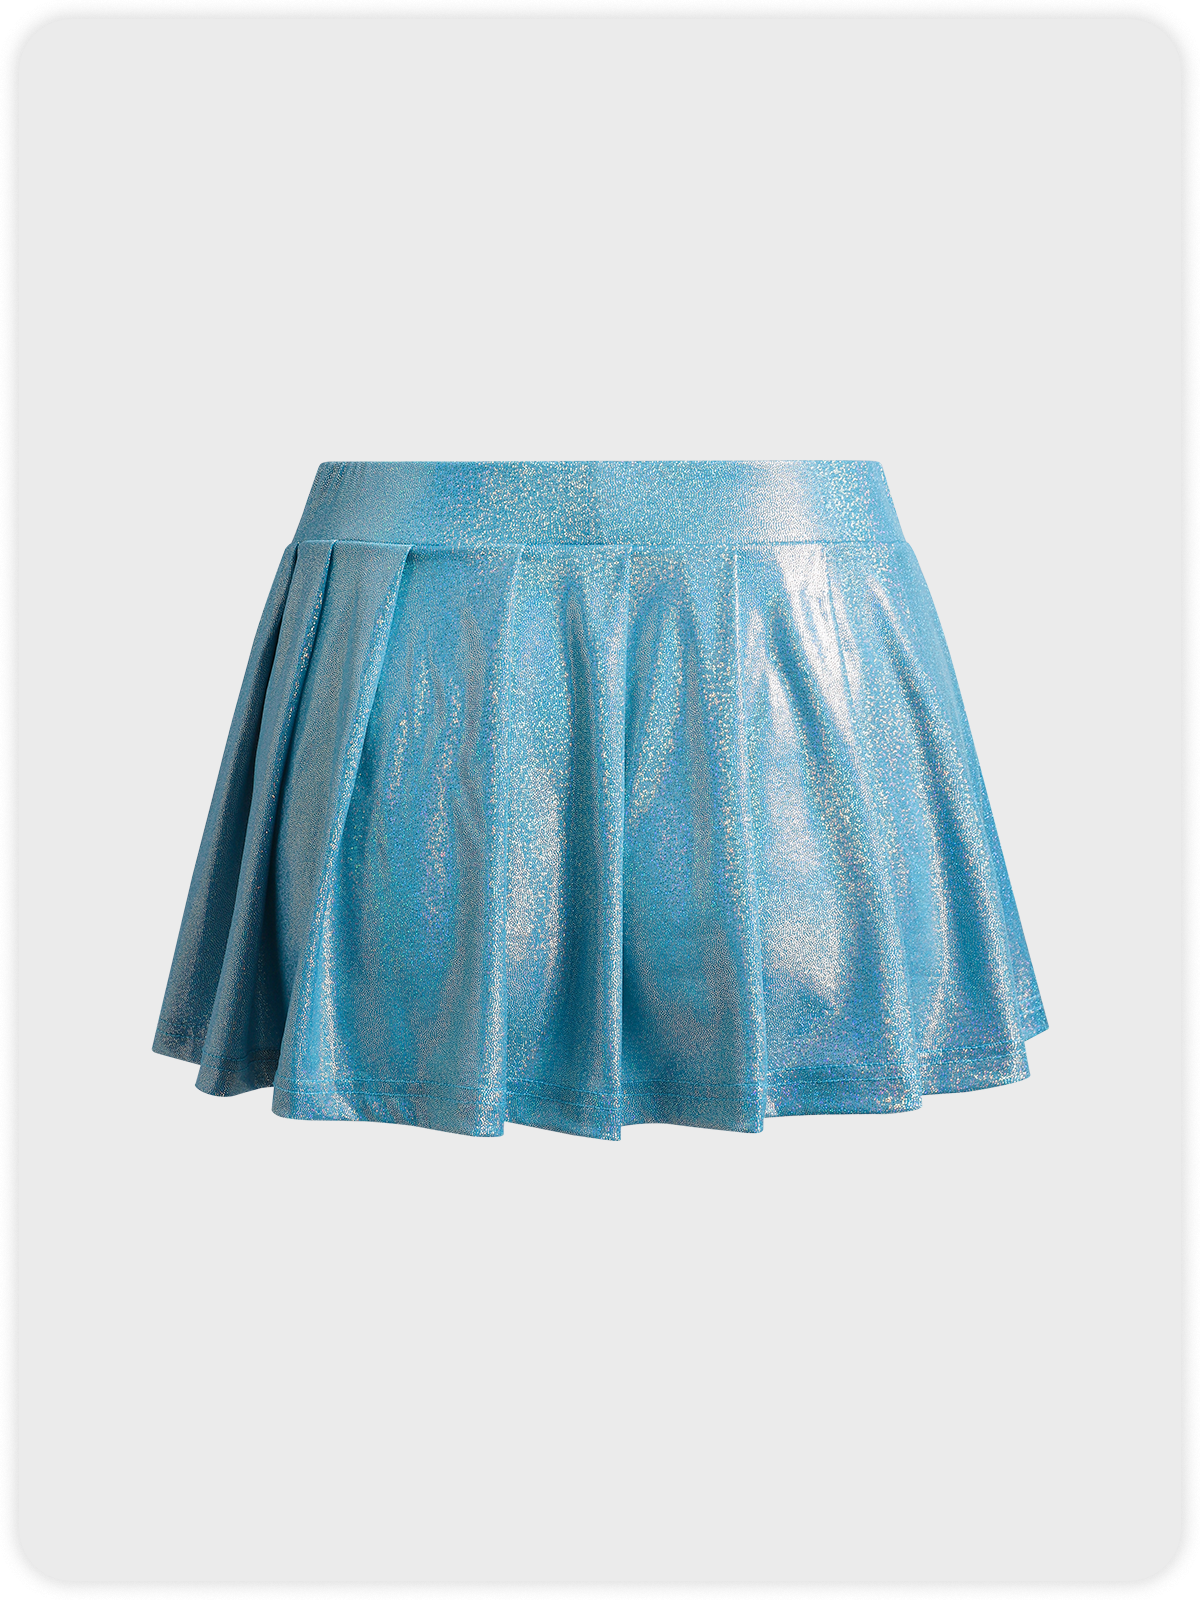 【Final Sale】Edgy Blue Glitter Bottom Skirt